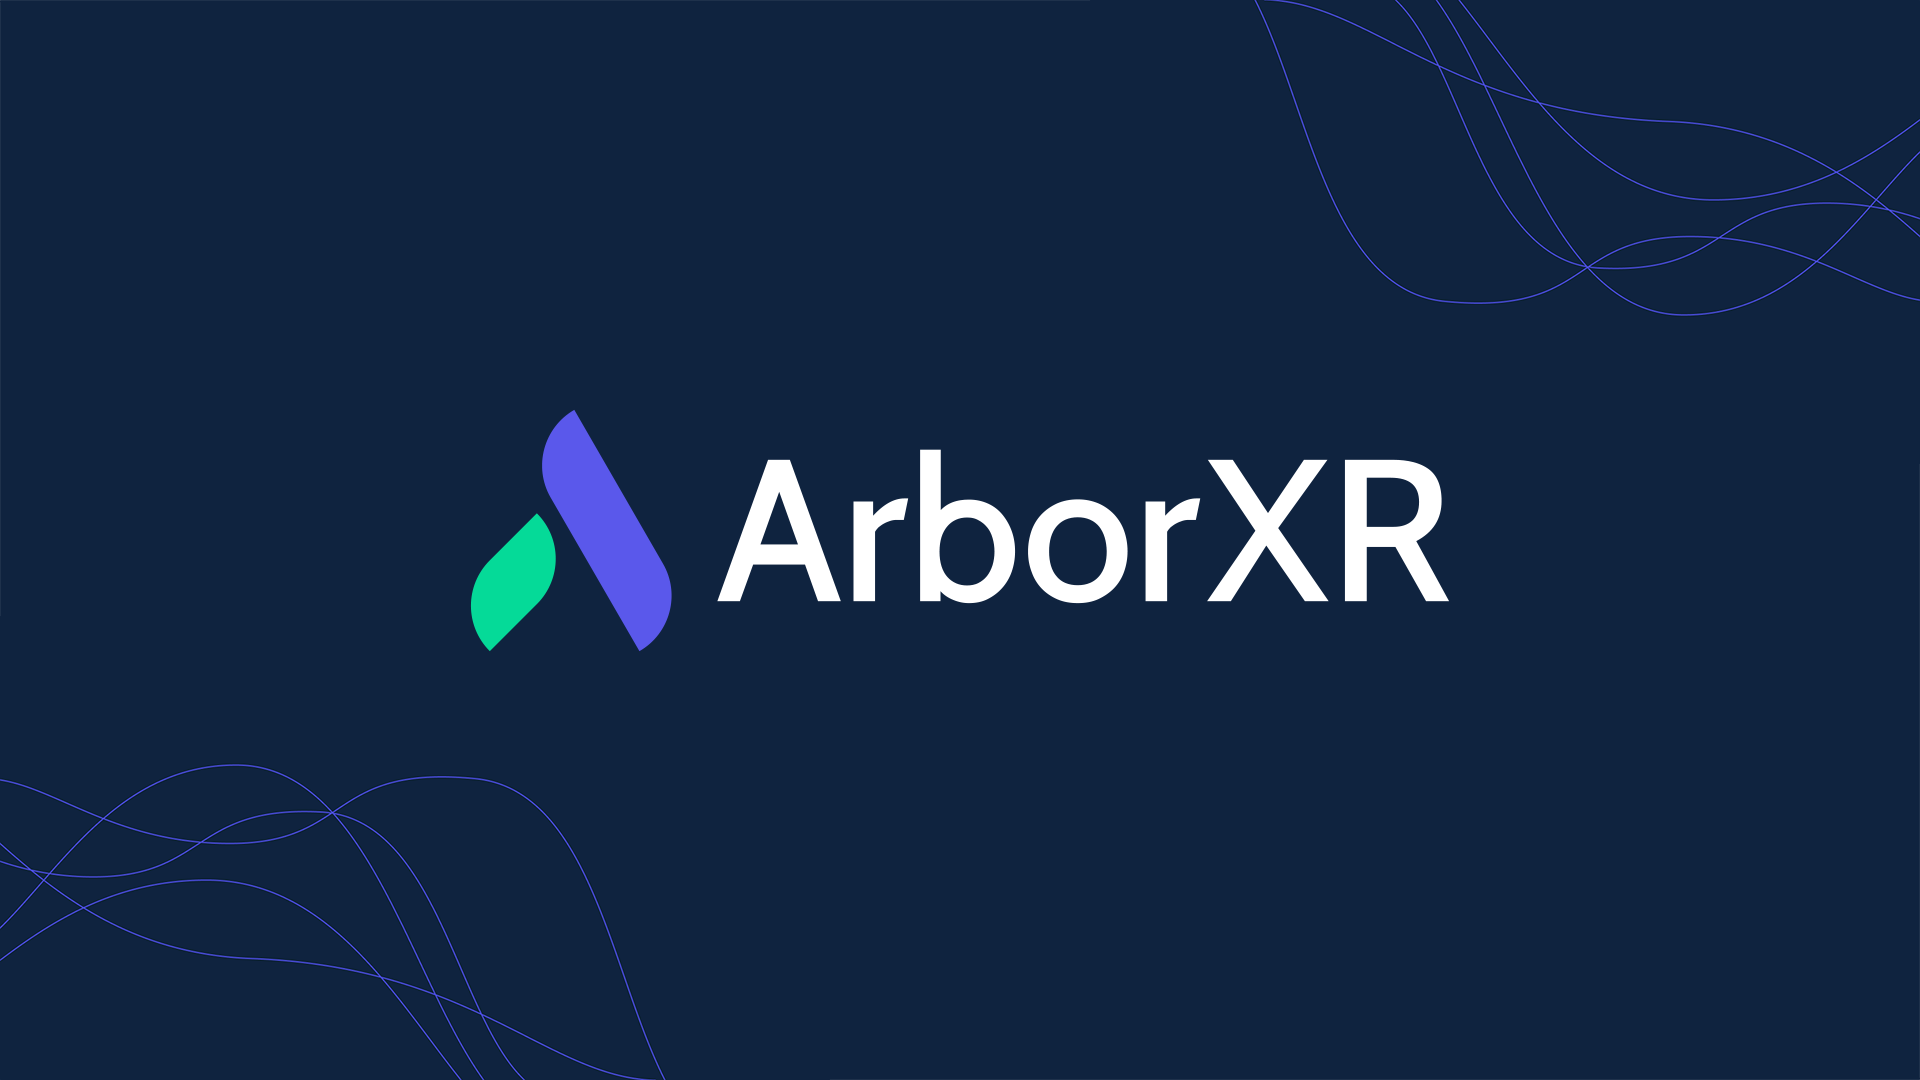 Introducing ArborXR